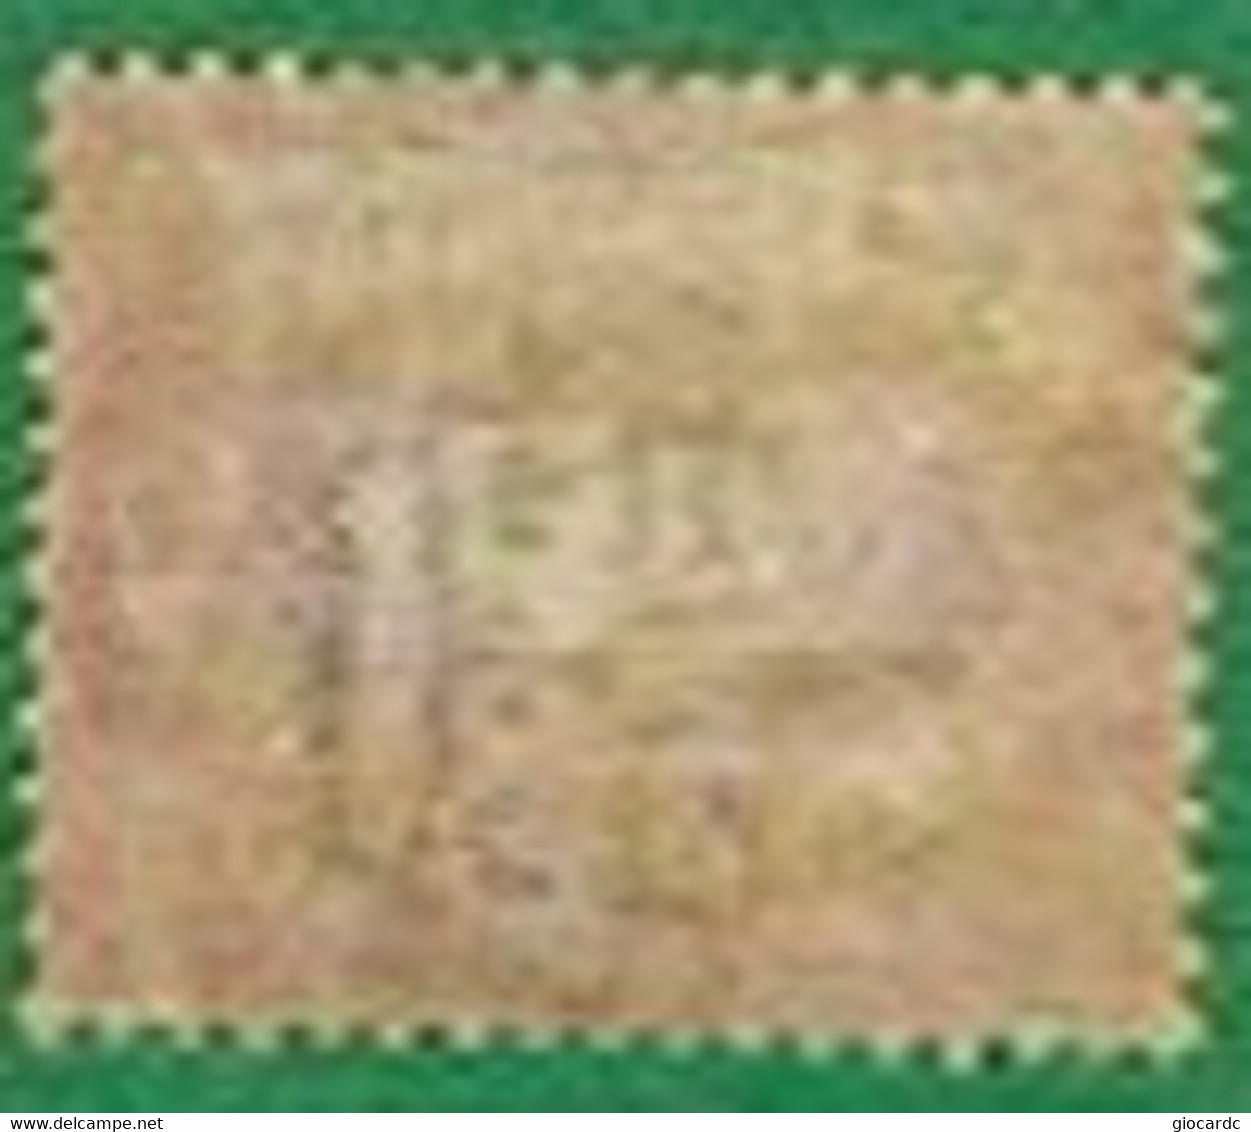 SAN MARINO CAT.UNIF.22 - 1892(1894)  STEMMA 5 LIRE - NUOVO LINGUELLATO* BEN CENTRATO (UNUSED) - Unused Stamps